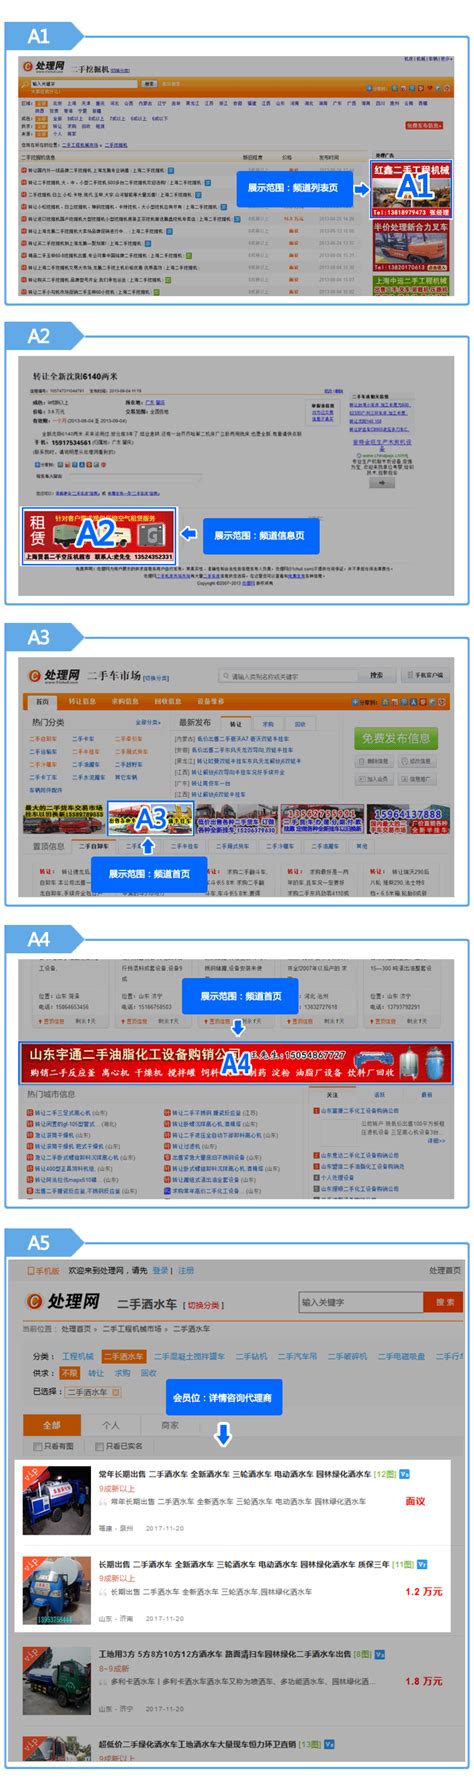 郑州讯推网络科技有限公司2020最新招聘信息_电话_地址 - 58企业名录